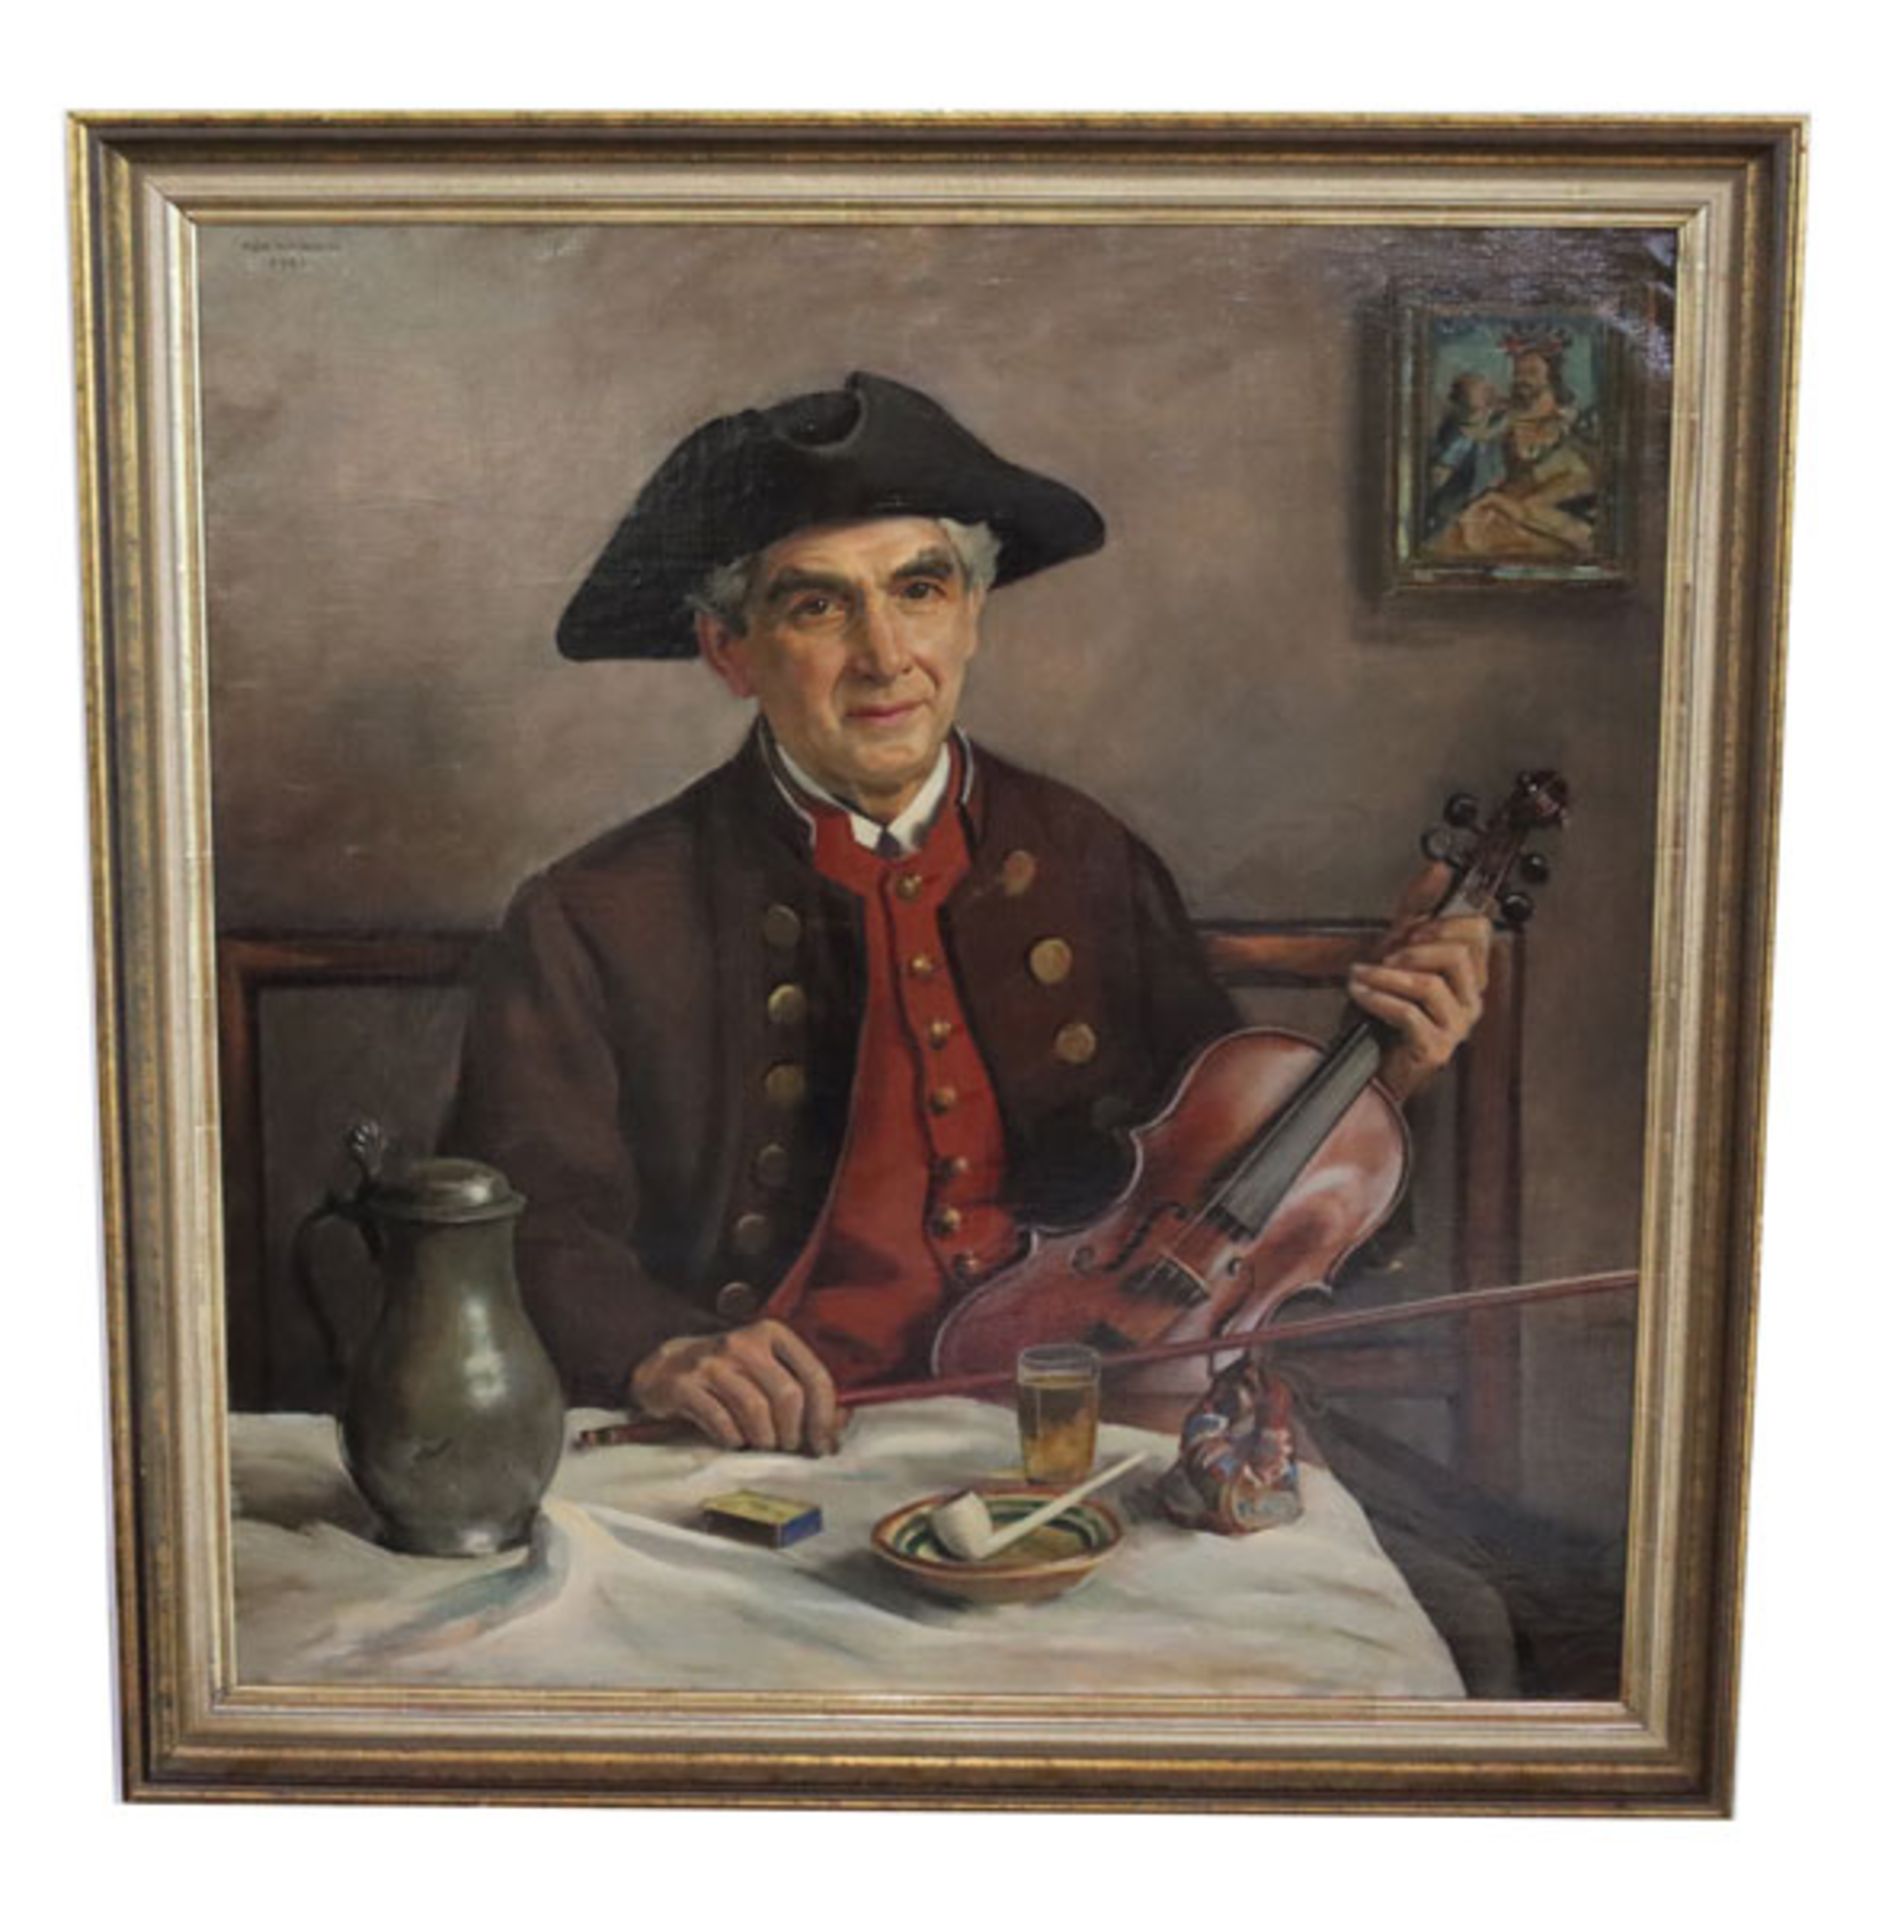 Gemälde ÖL/LW 'Geigenspieler', signiert Max Rimboeck 1941, * 1890 Passau + 1956 München, Lit.: